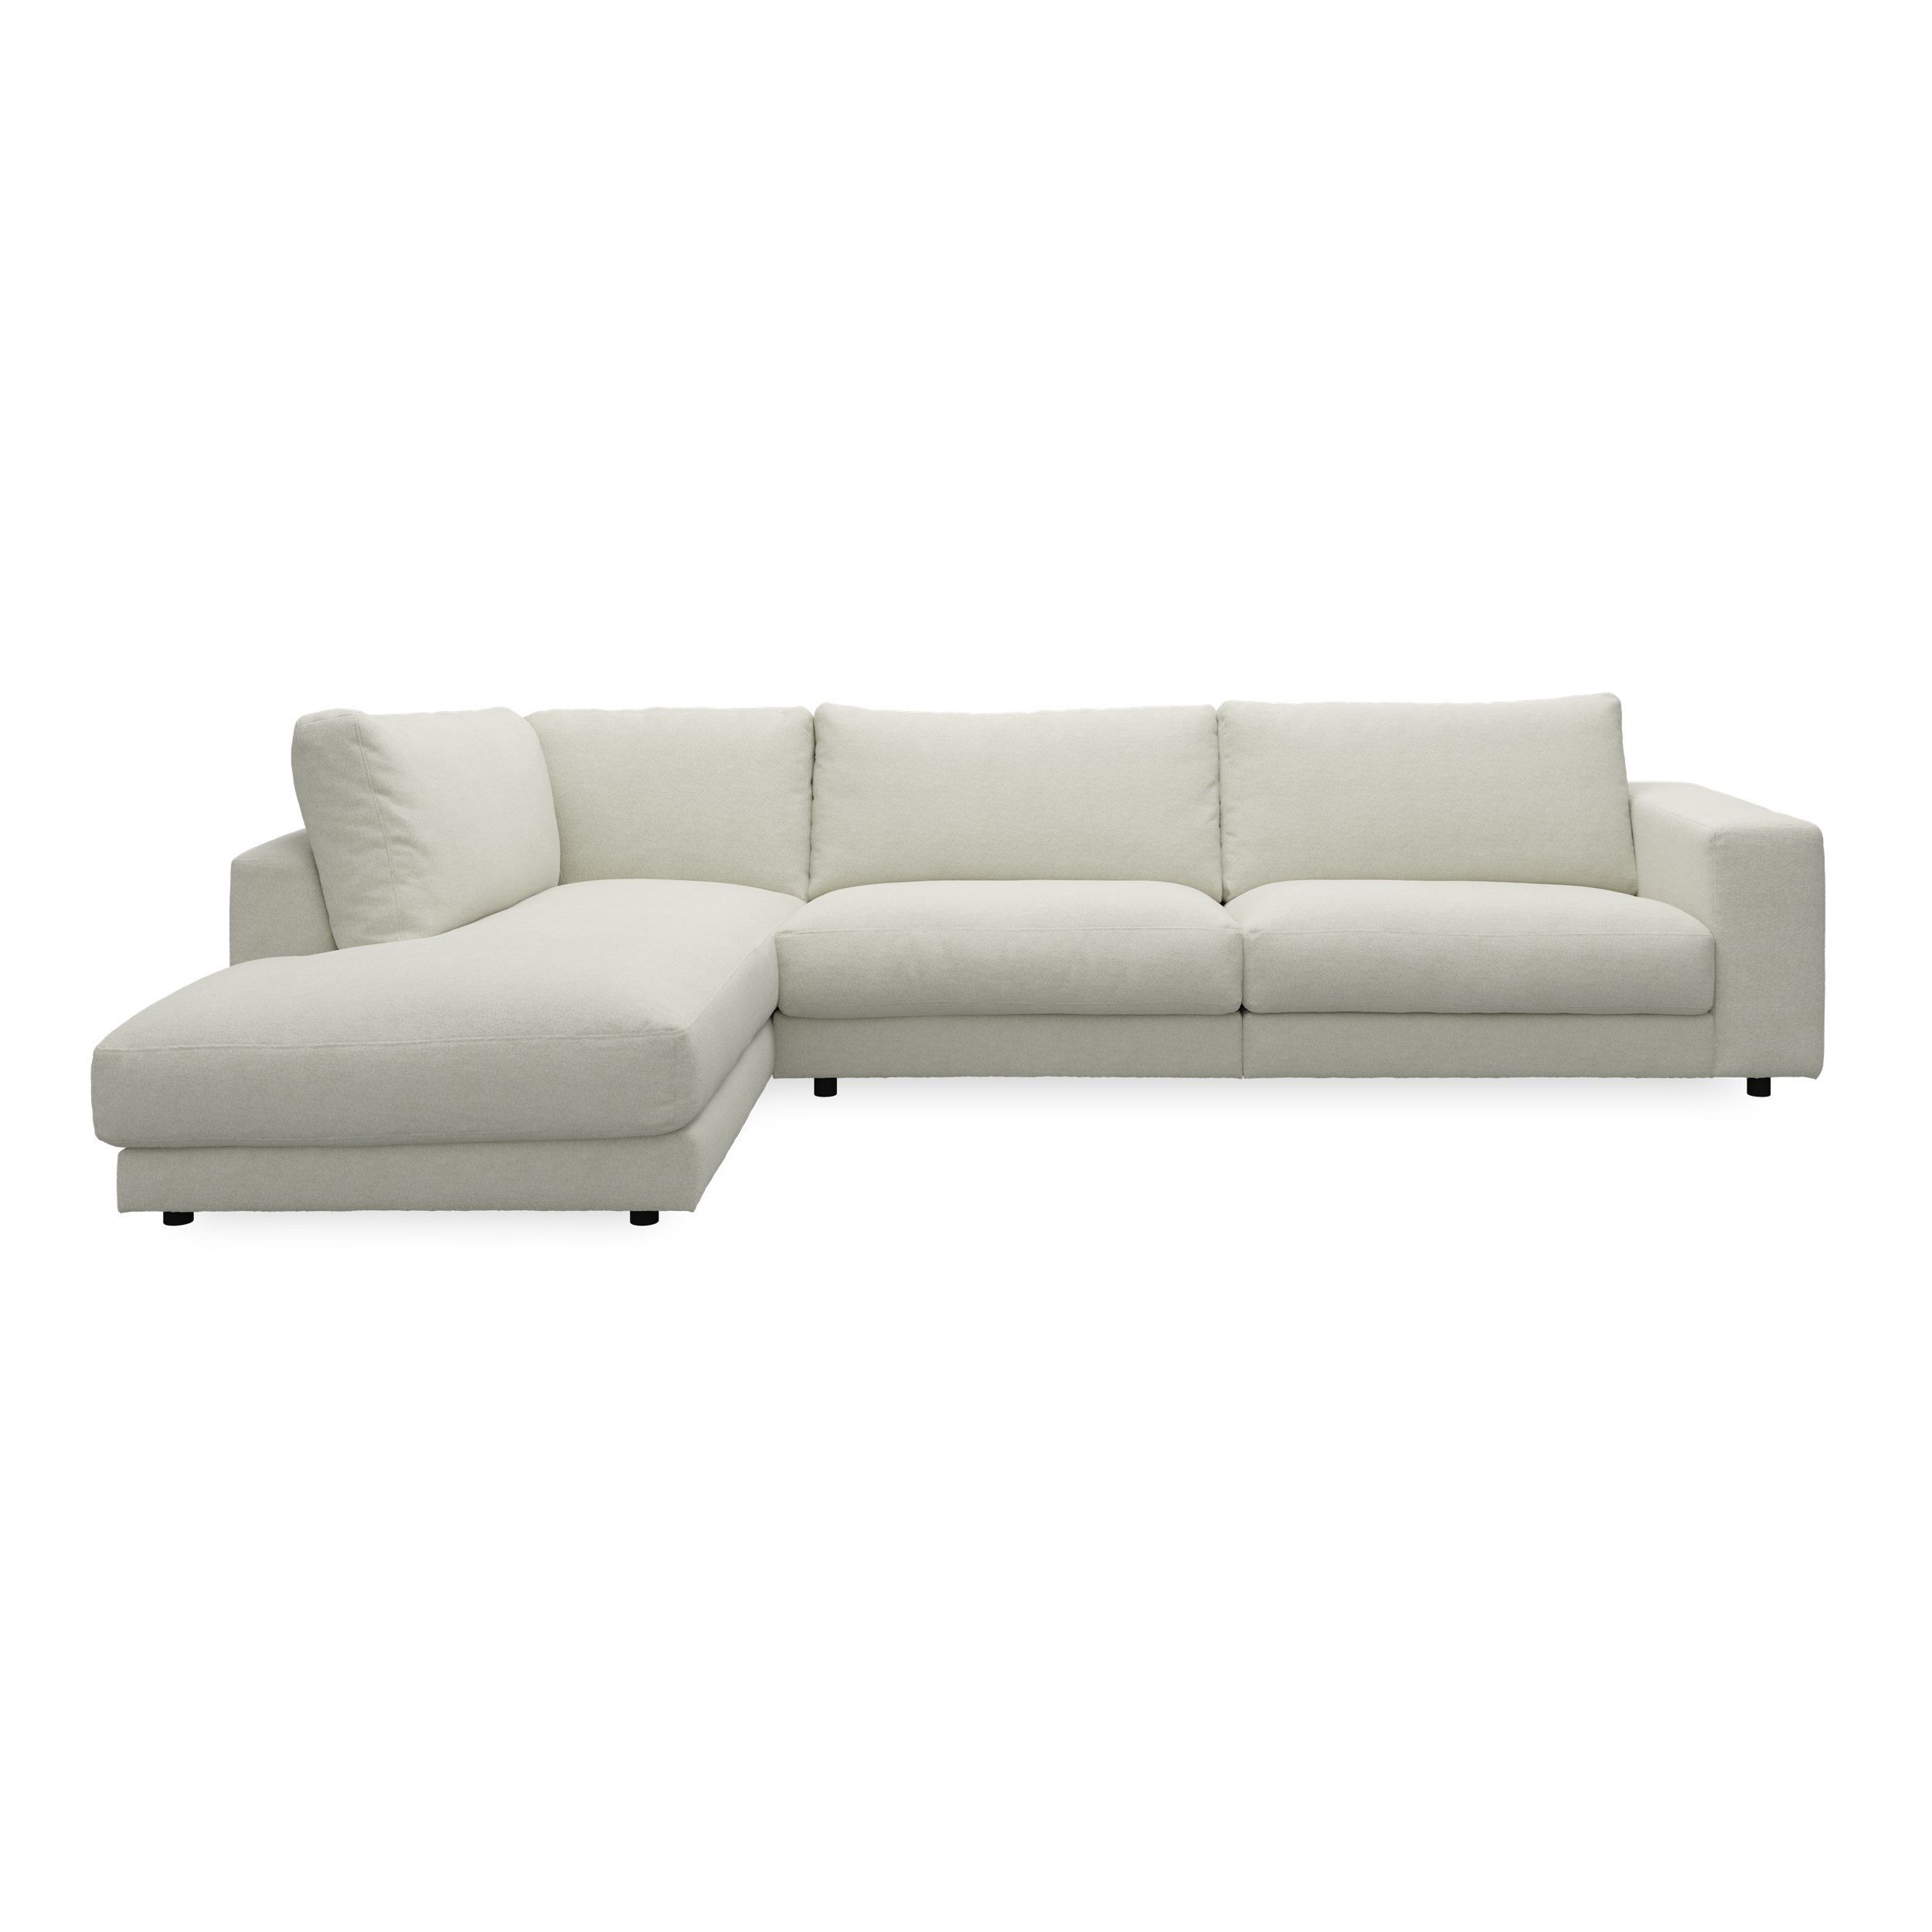 Bennent vänstervänd soffa med divan - Yelda Natur klädsel, ben i svart plast och S:skum/fib/din/sili R:Dun/skum